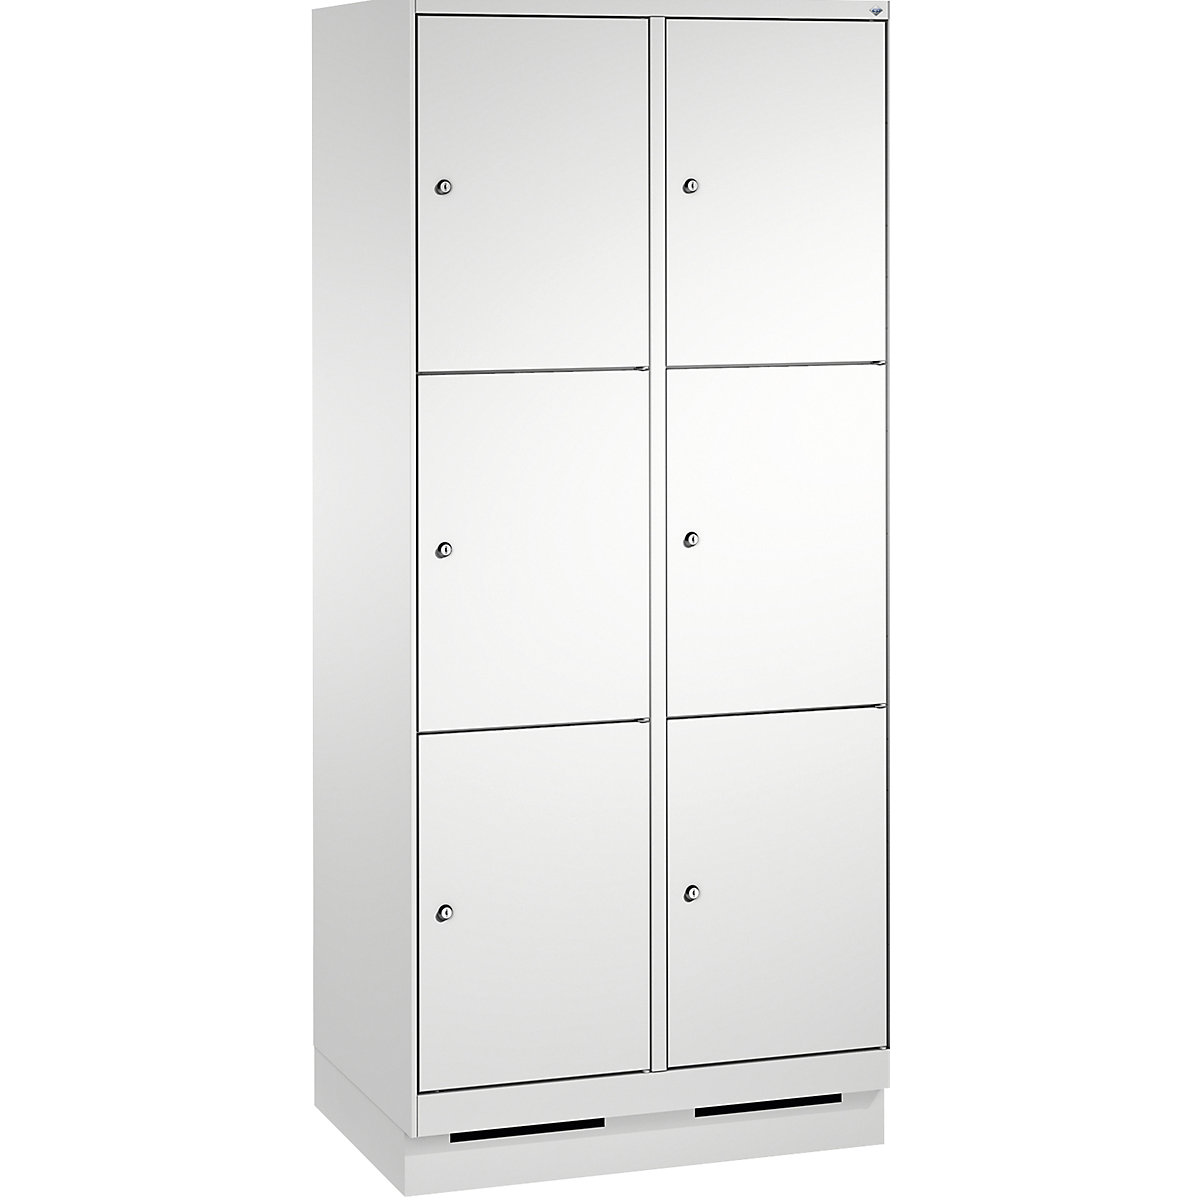 Armoire à casiers sur socle EVOLO – C+P, 2 compartiments, 3 casiers chacun, largeur compartiments 400 mm, gris clair / gris clair-16